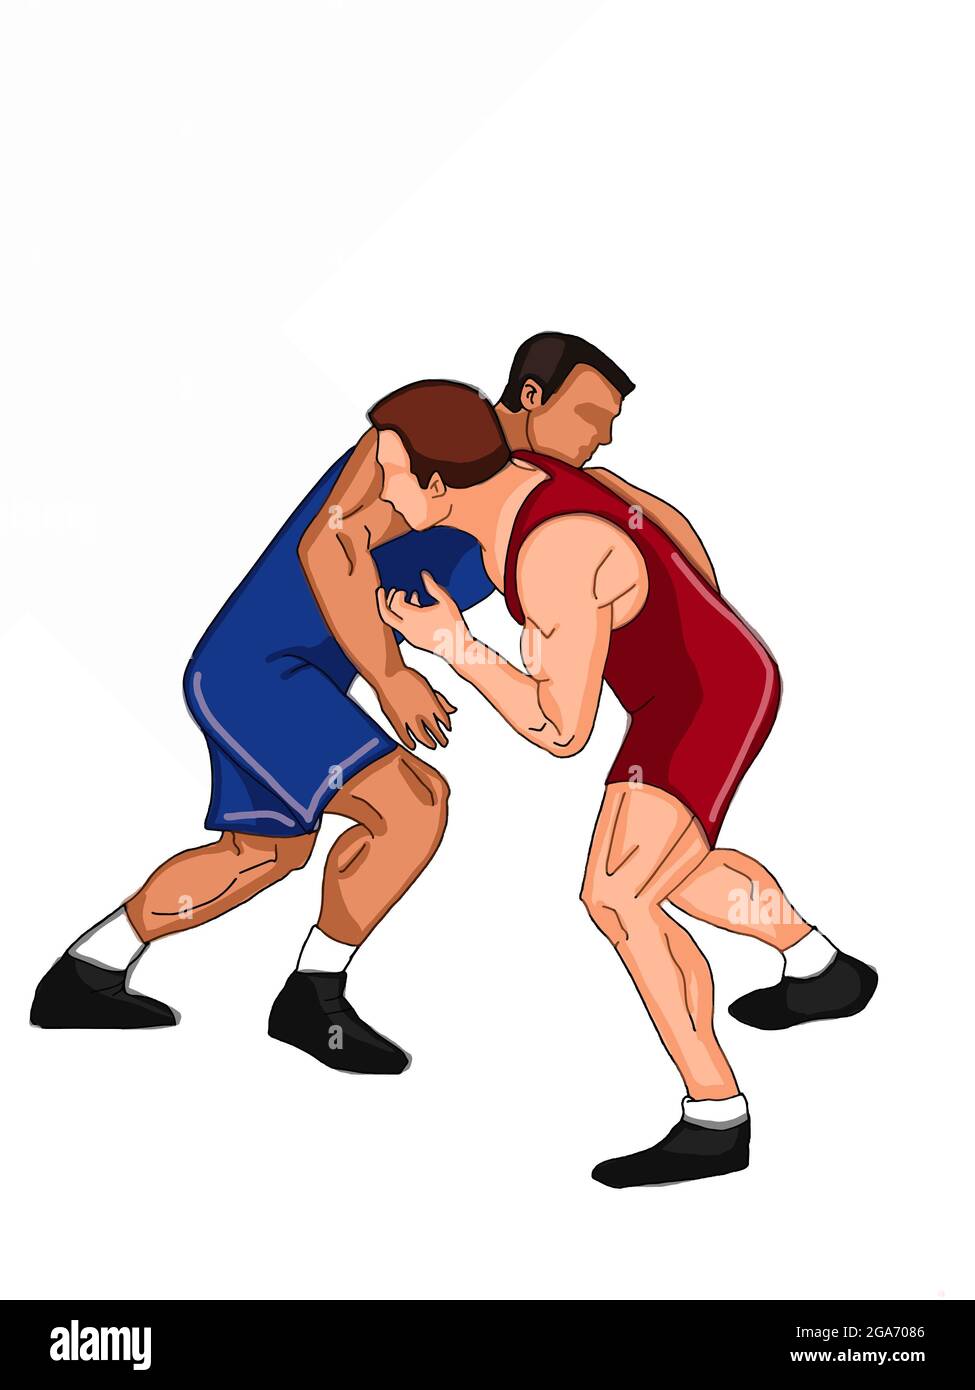 Illustrazione cartoon del wrestler di Olimpic Foto Stock